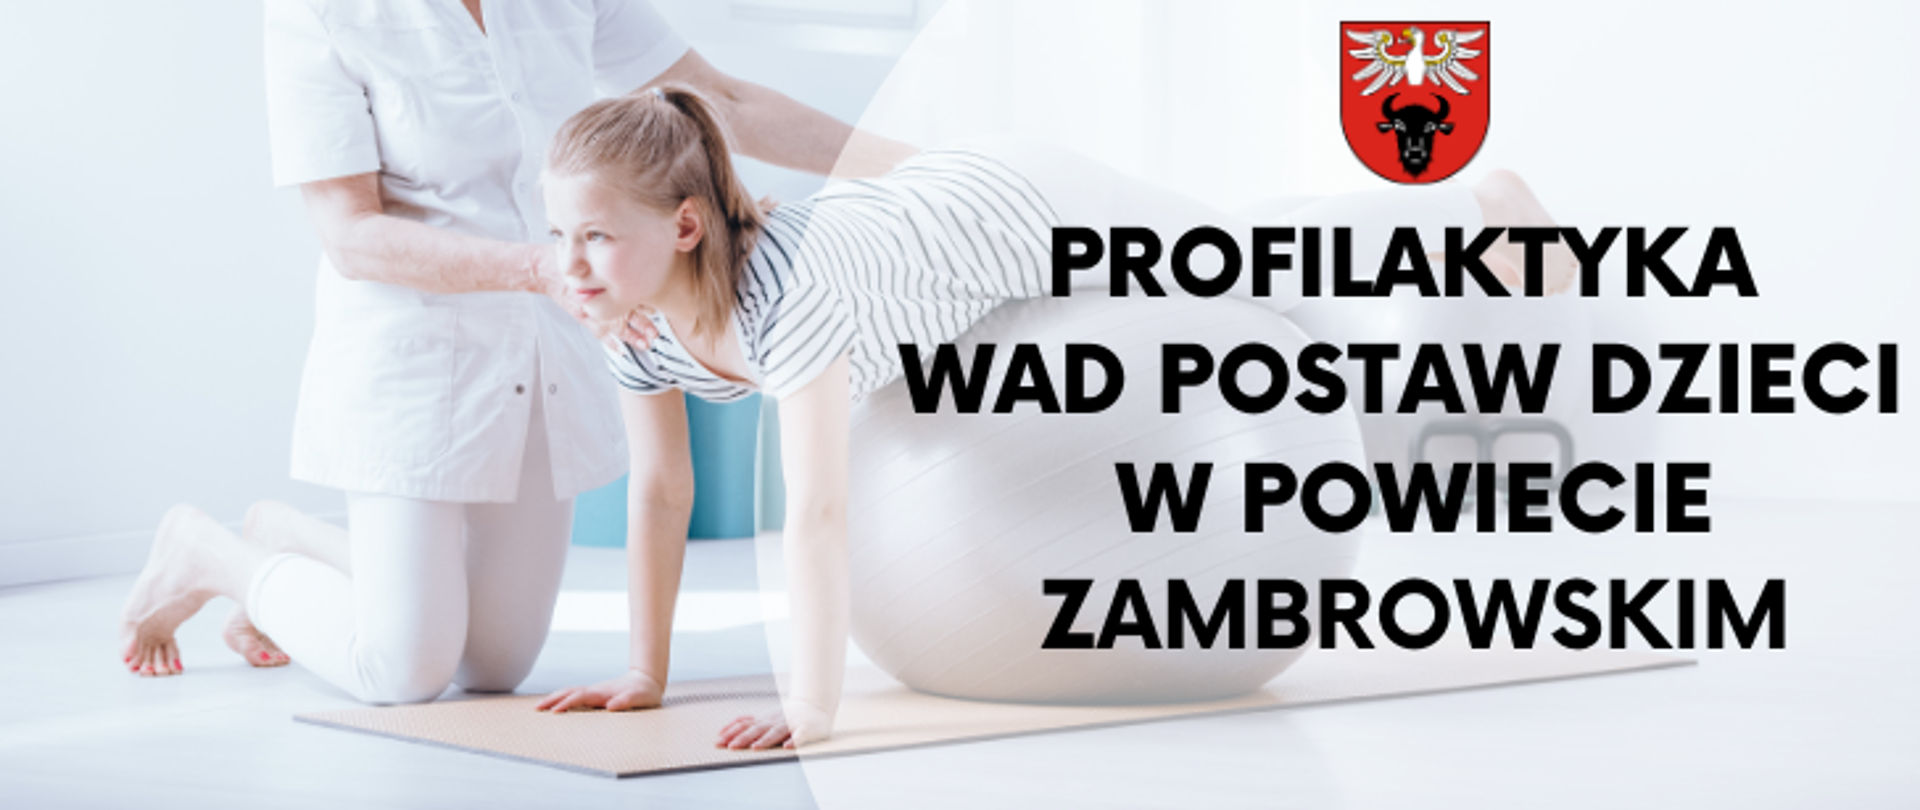 banner reklamowy z logo powiatu oraz napis "Profilaktyka wad postaw dzieci w Powiecie Zambrowskim"